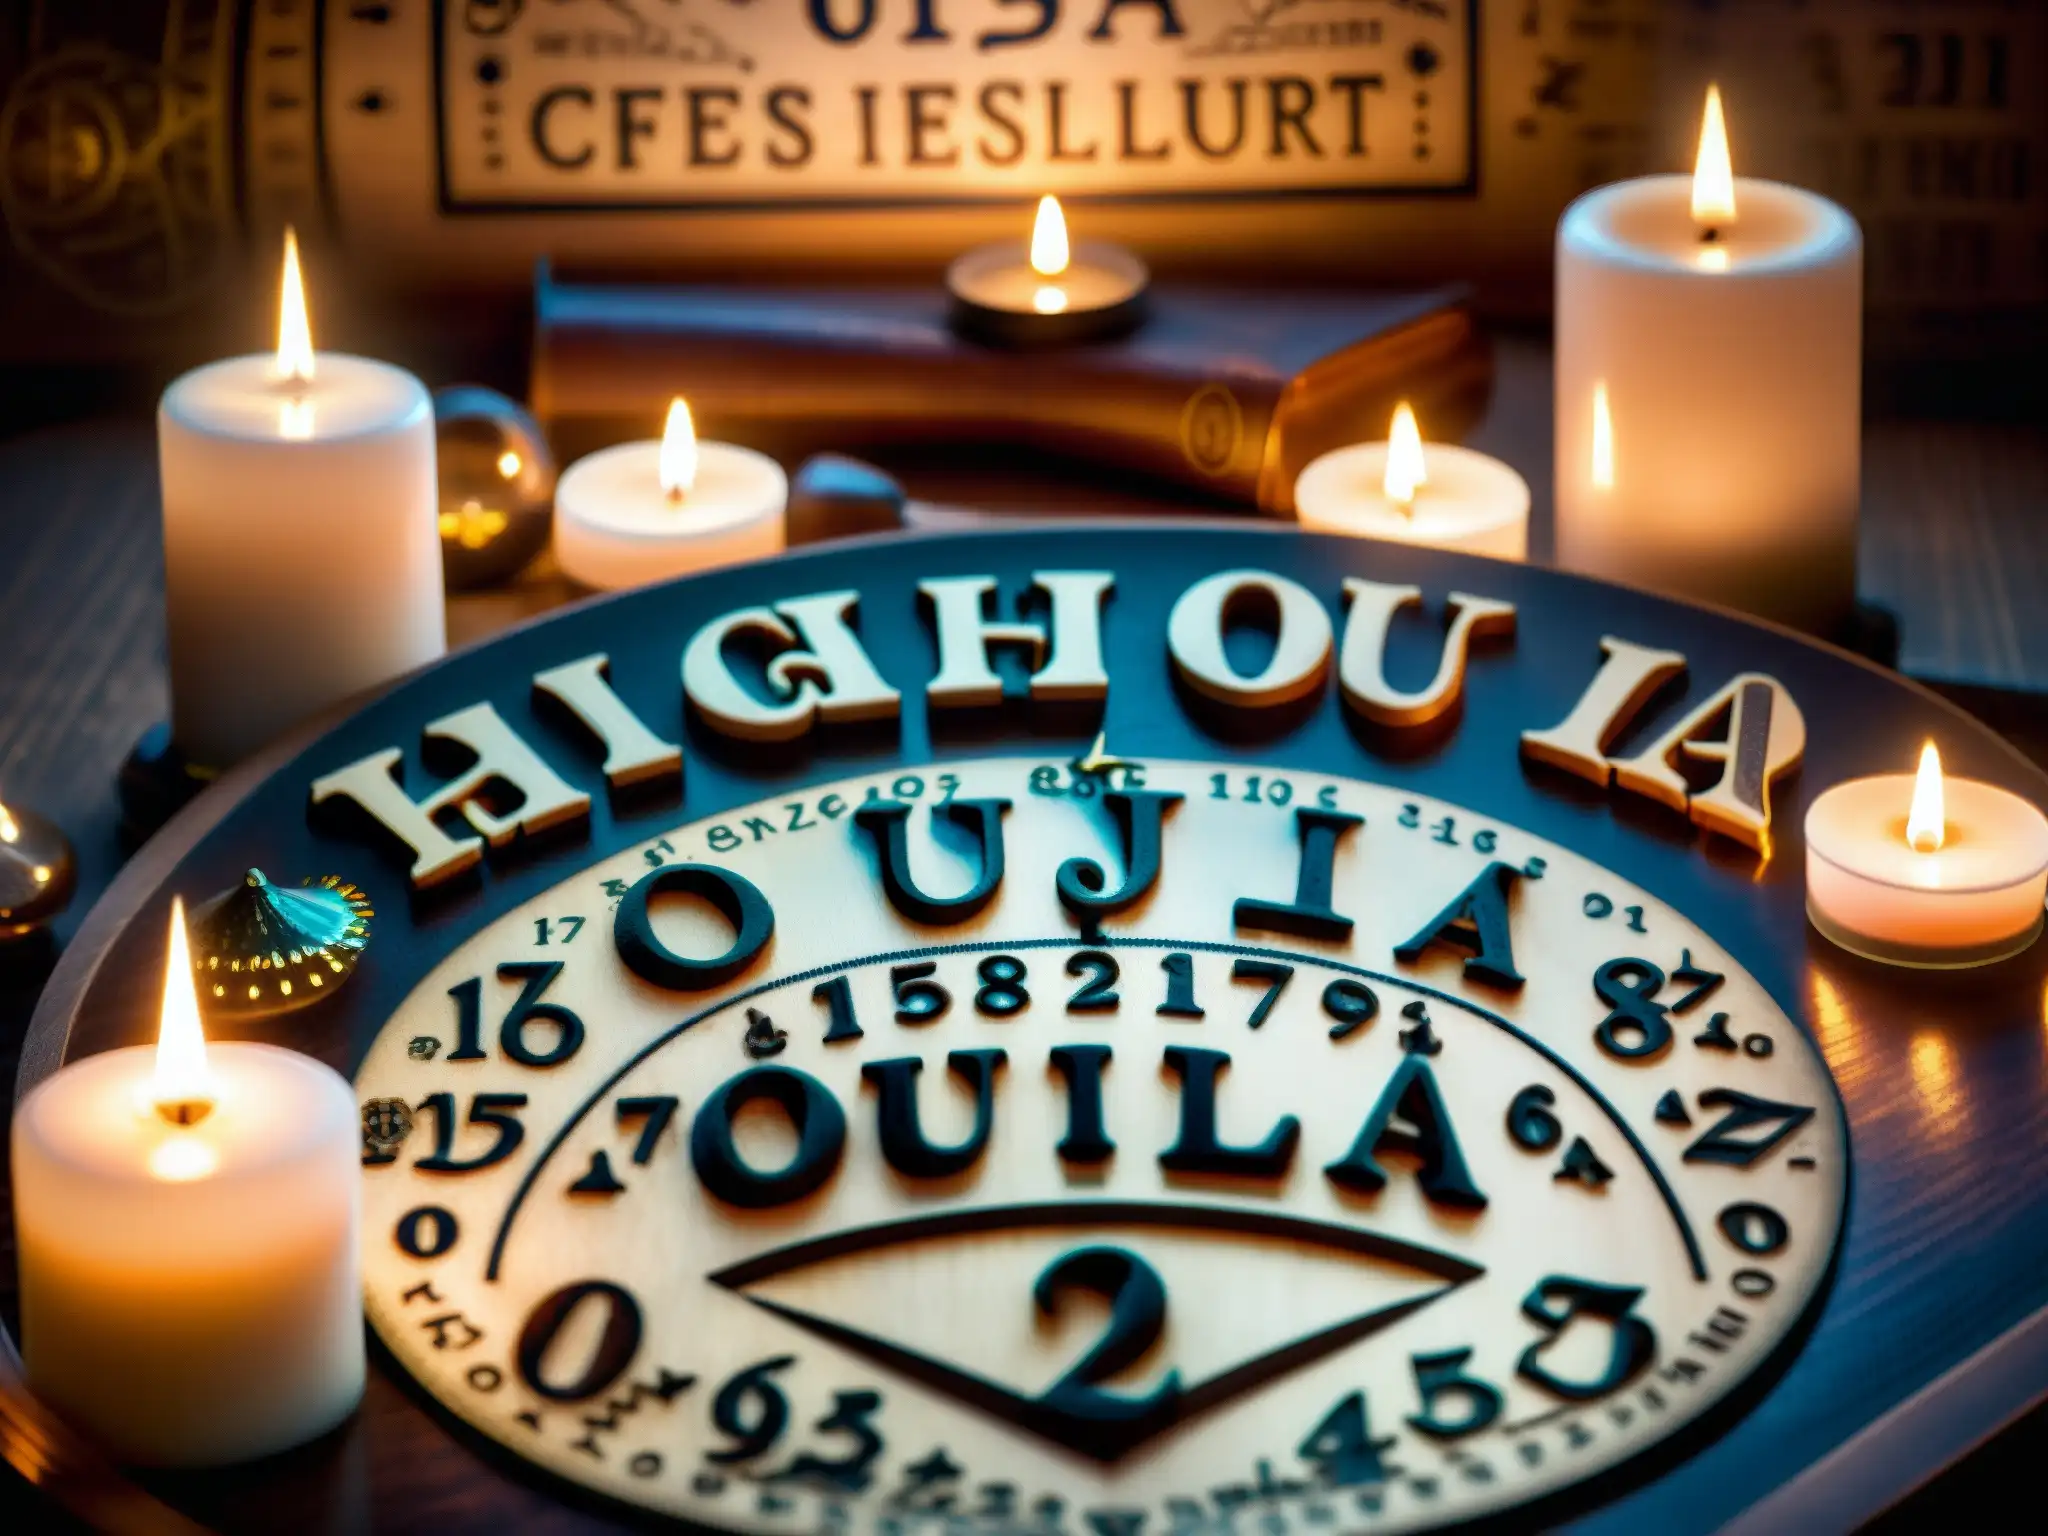 Un tablero Ouija desgastado y detallado rodeado de velas, manos en la planchette, en una atmósfera misteriosa